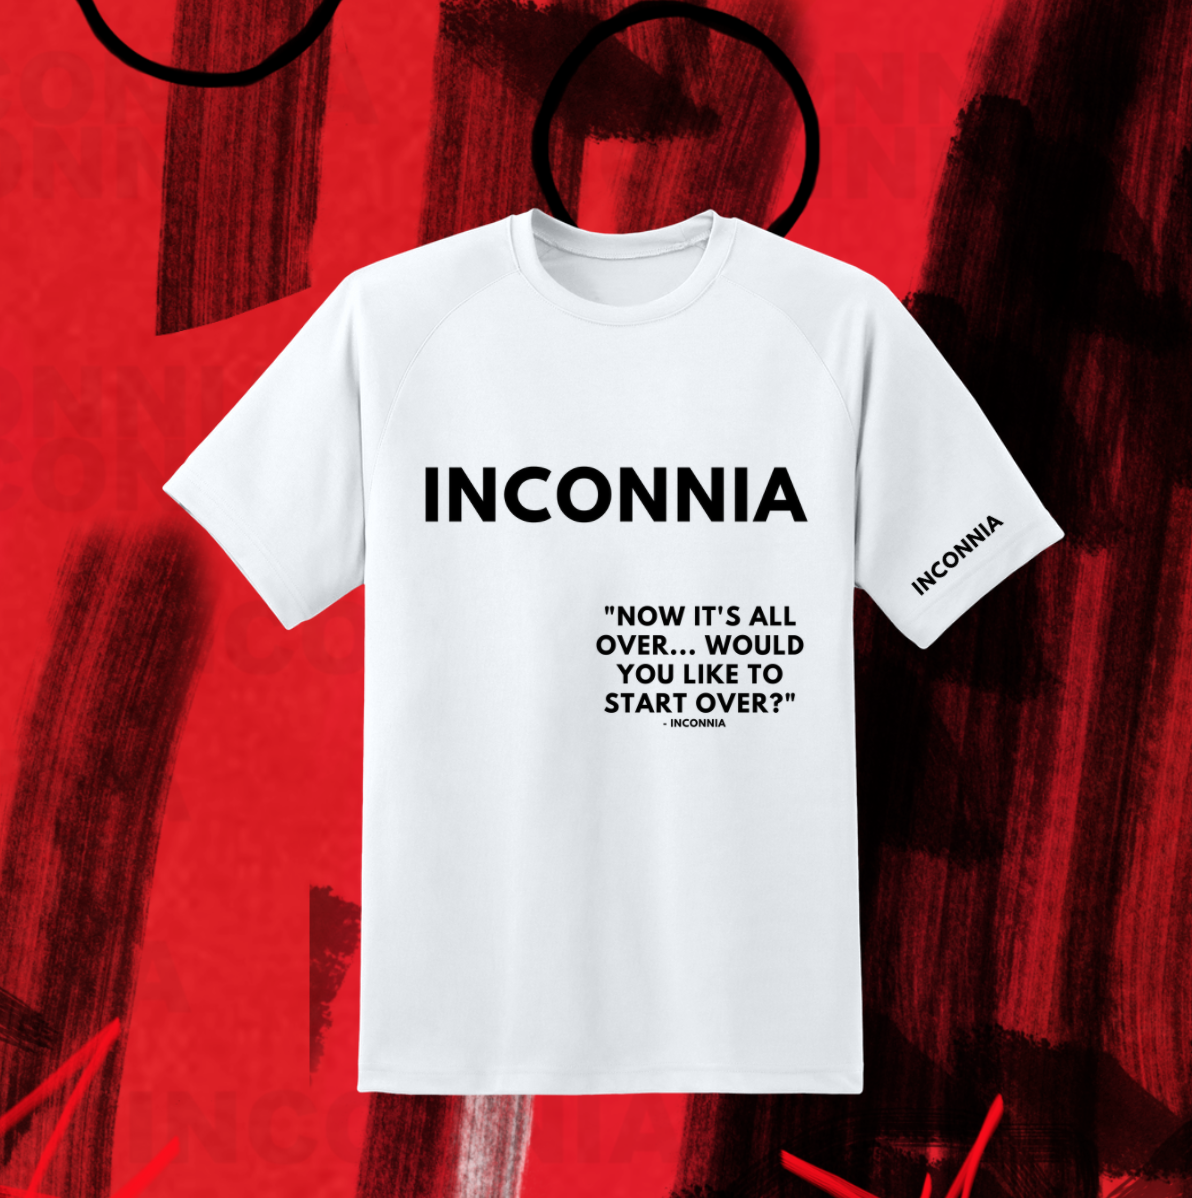 INCONNIA t-shirt